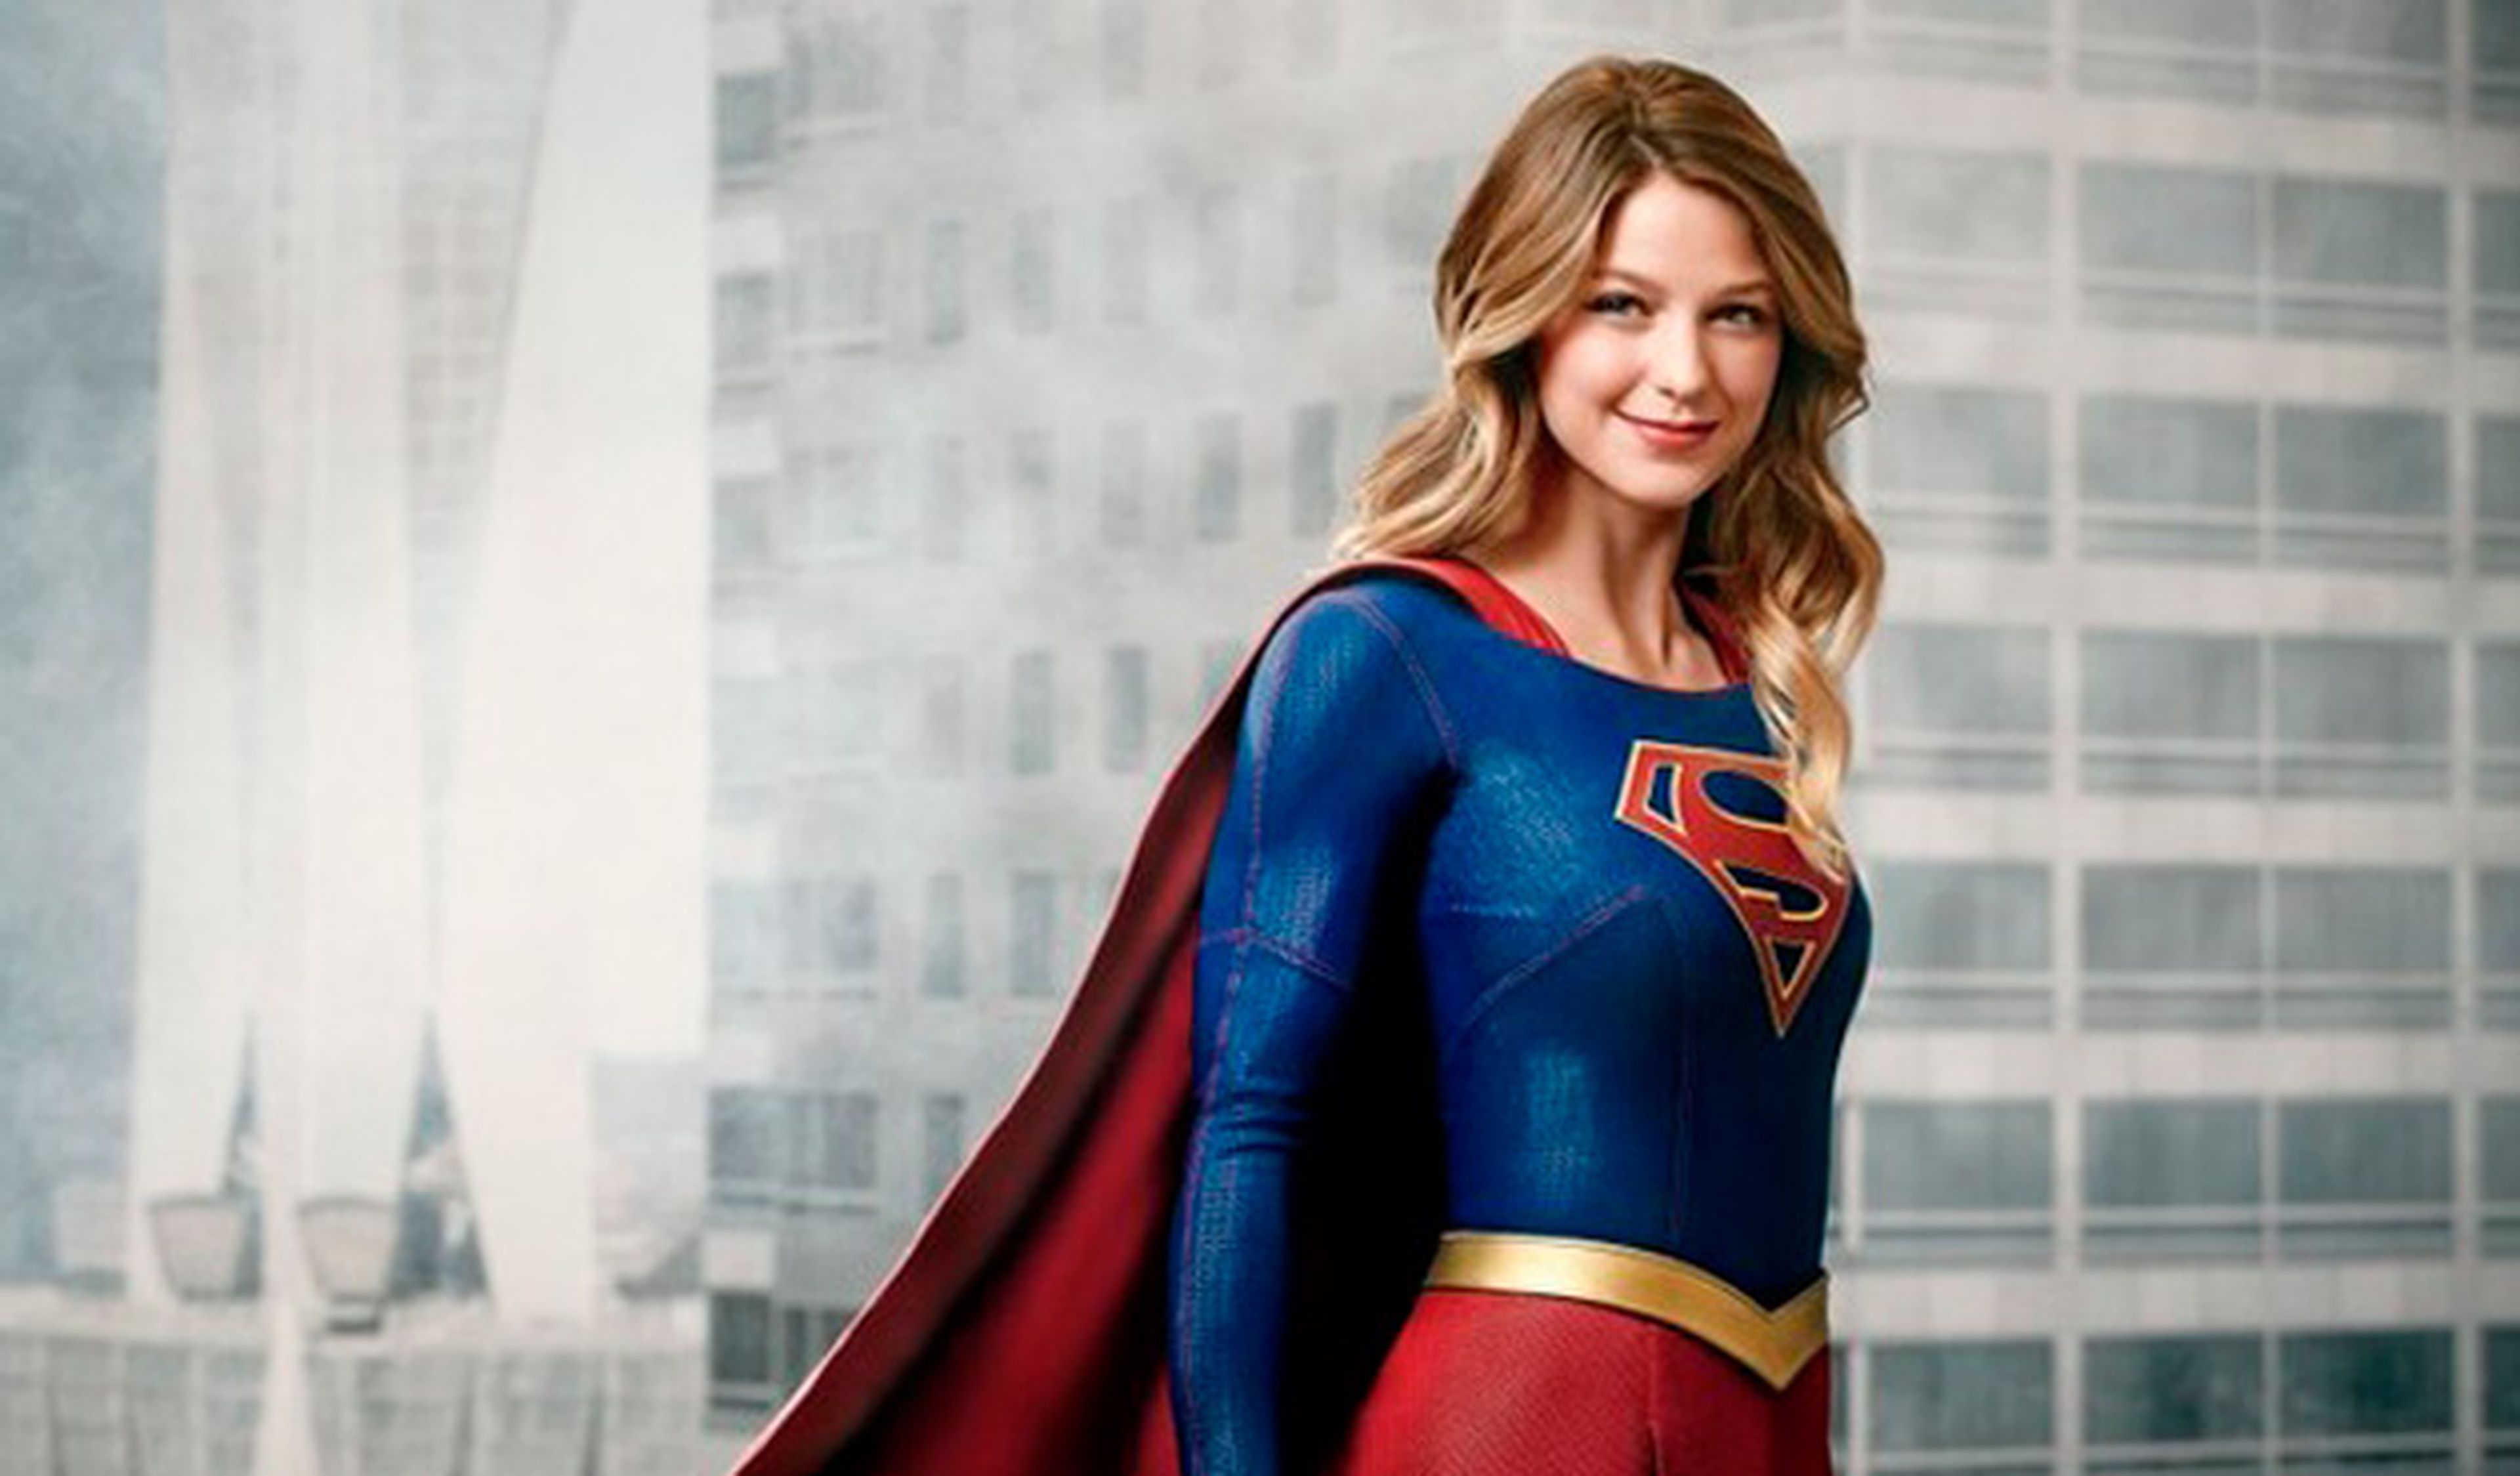 Supergirl tendrá temporada 2 en la cadena The CW